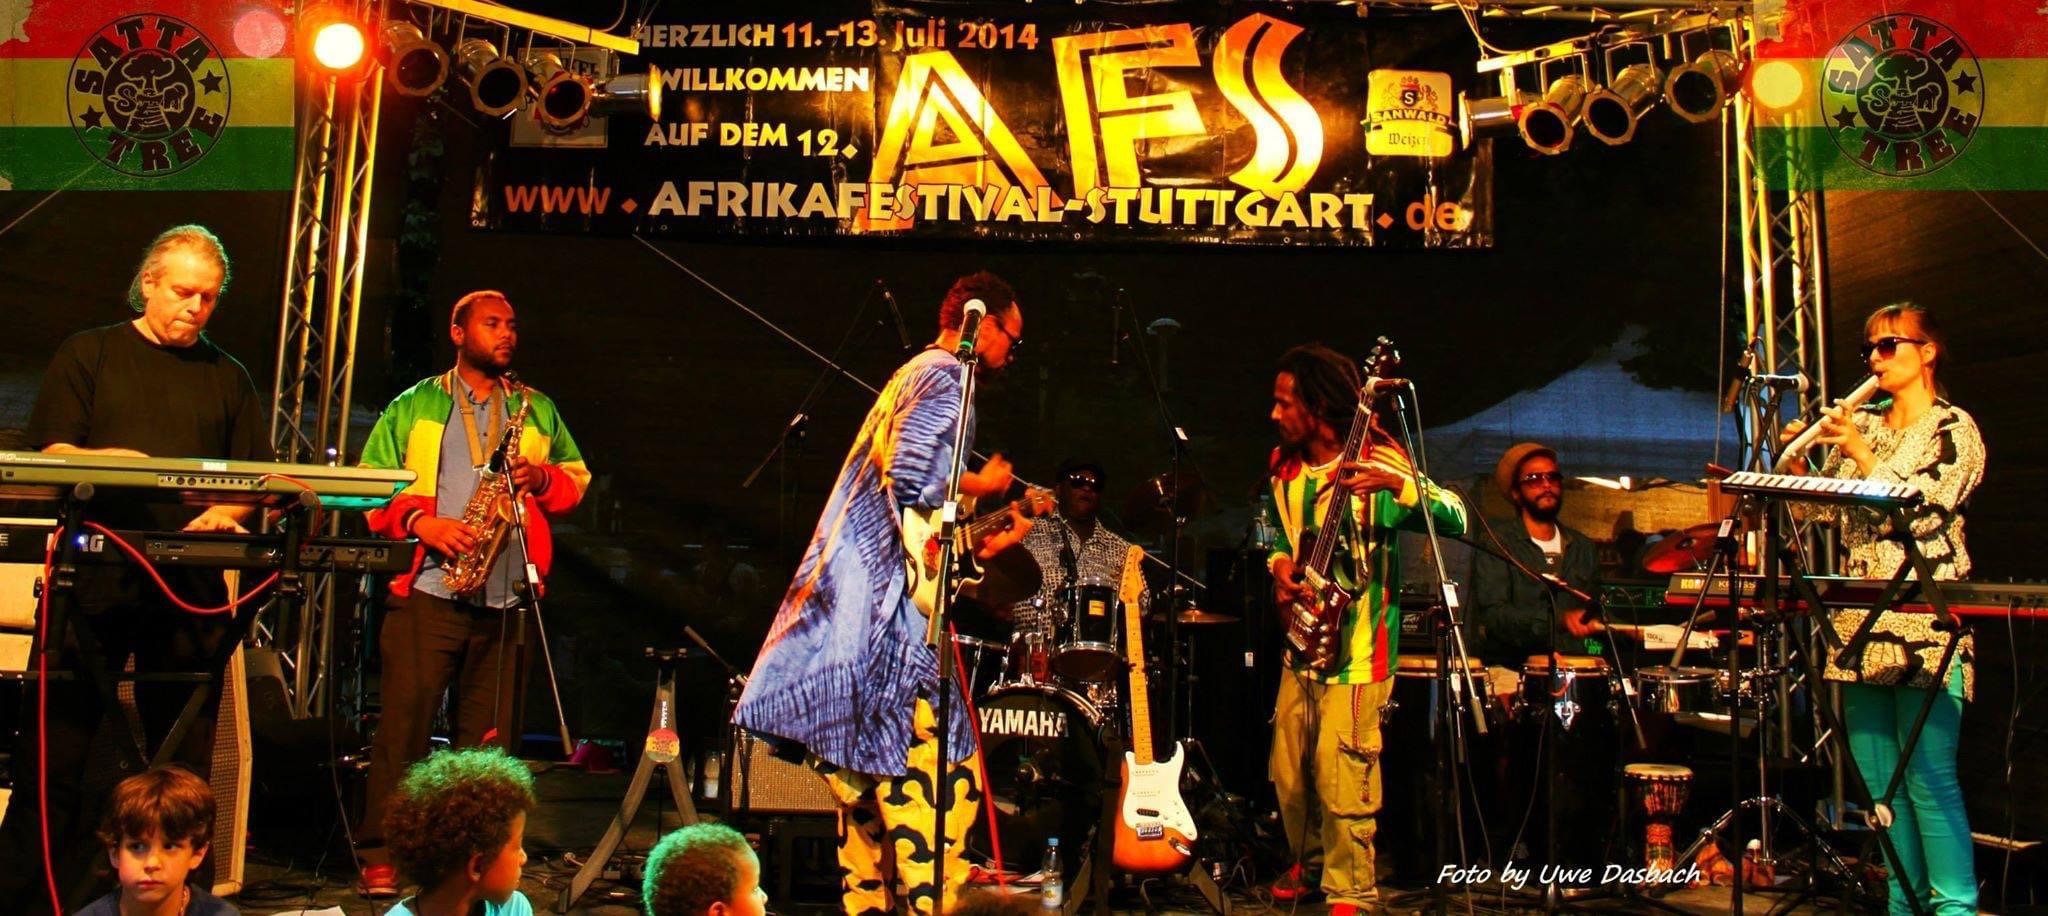 African Festival Stuttgart